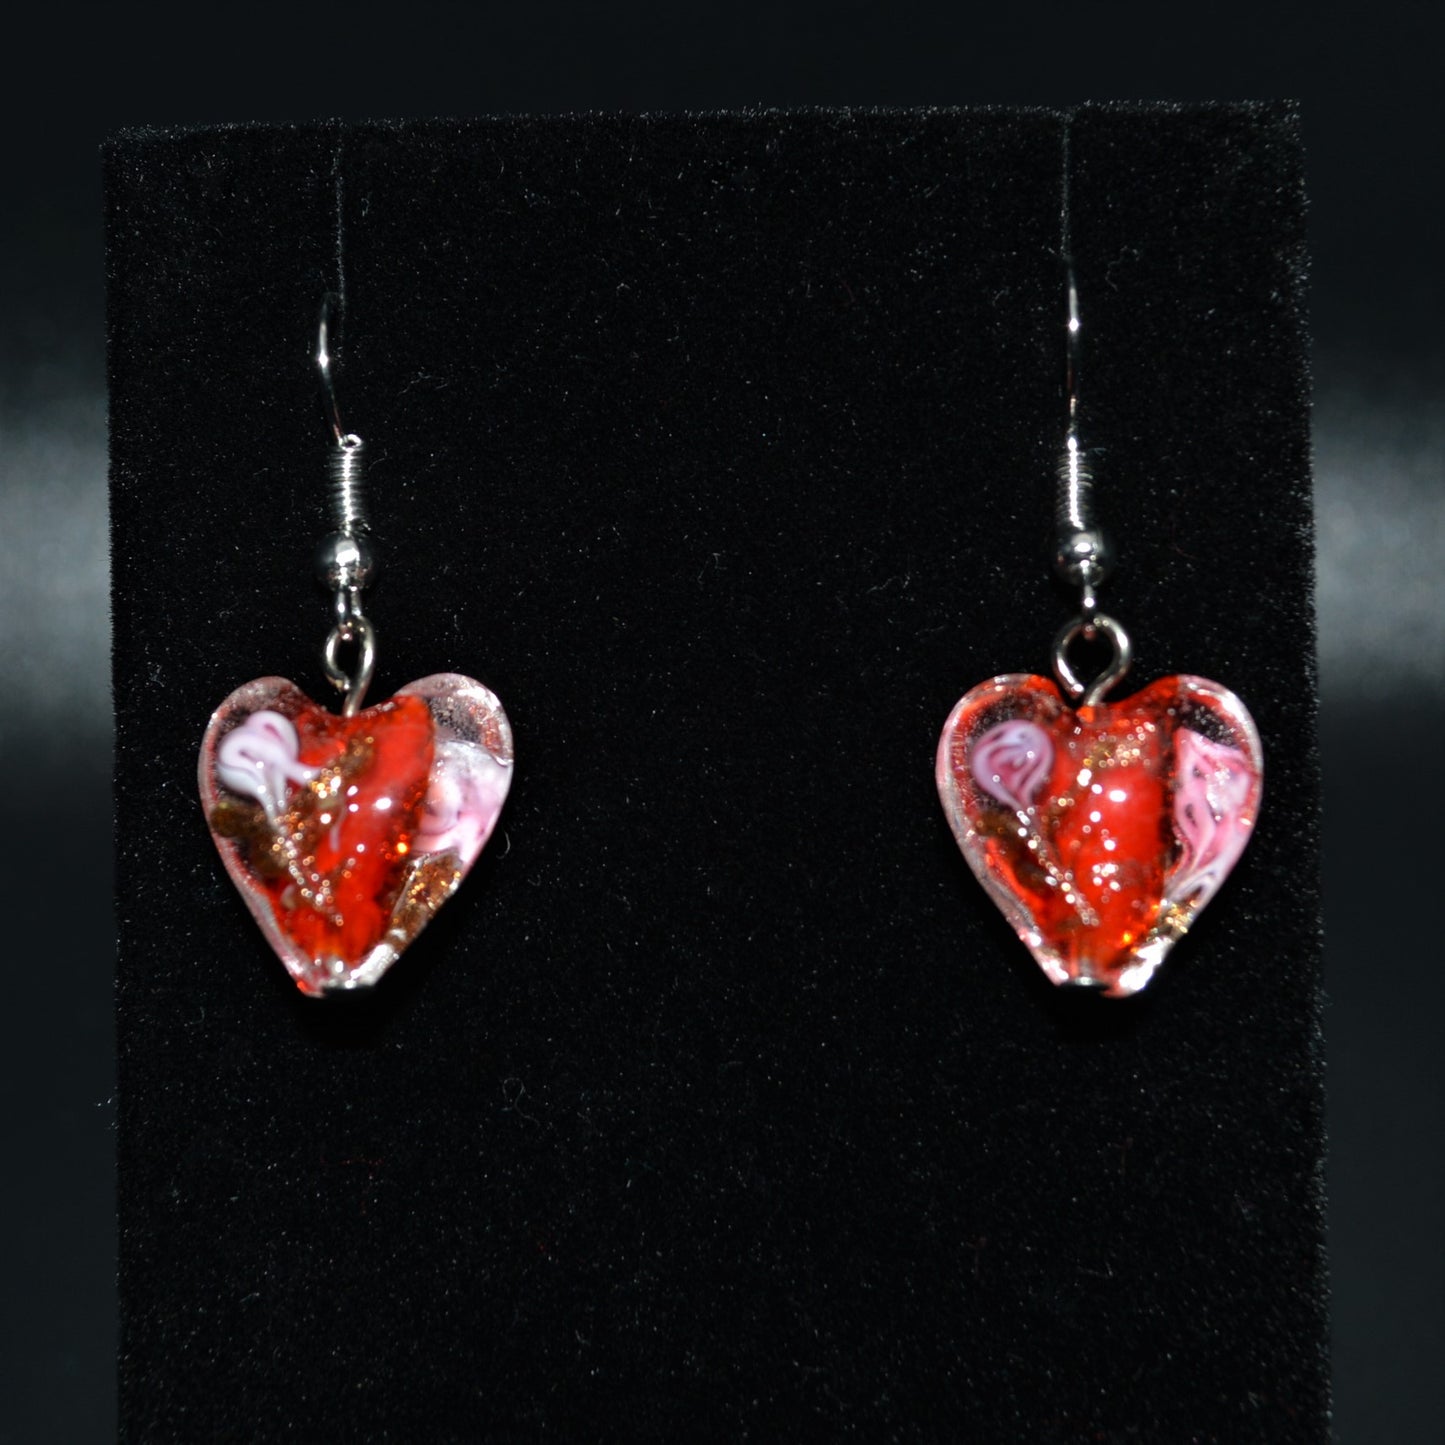 Lampworked Glass Heart Earrings (Red)